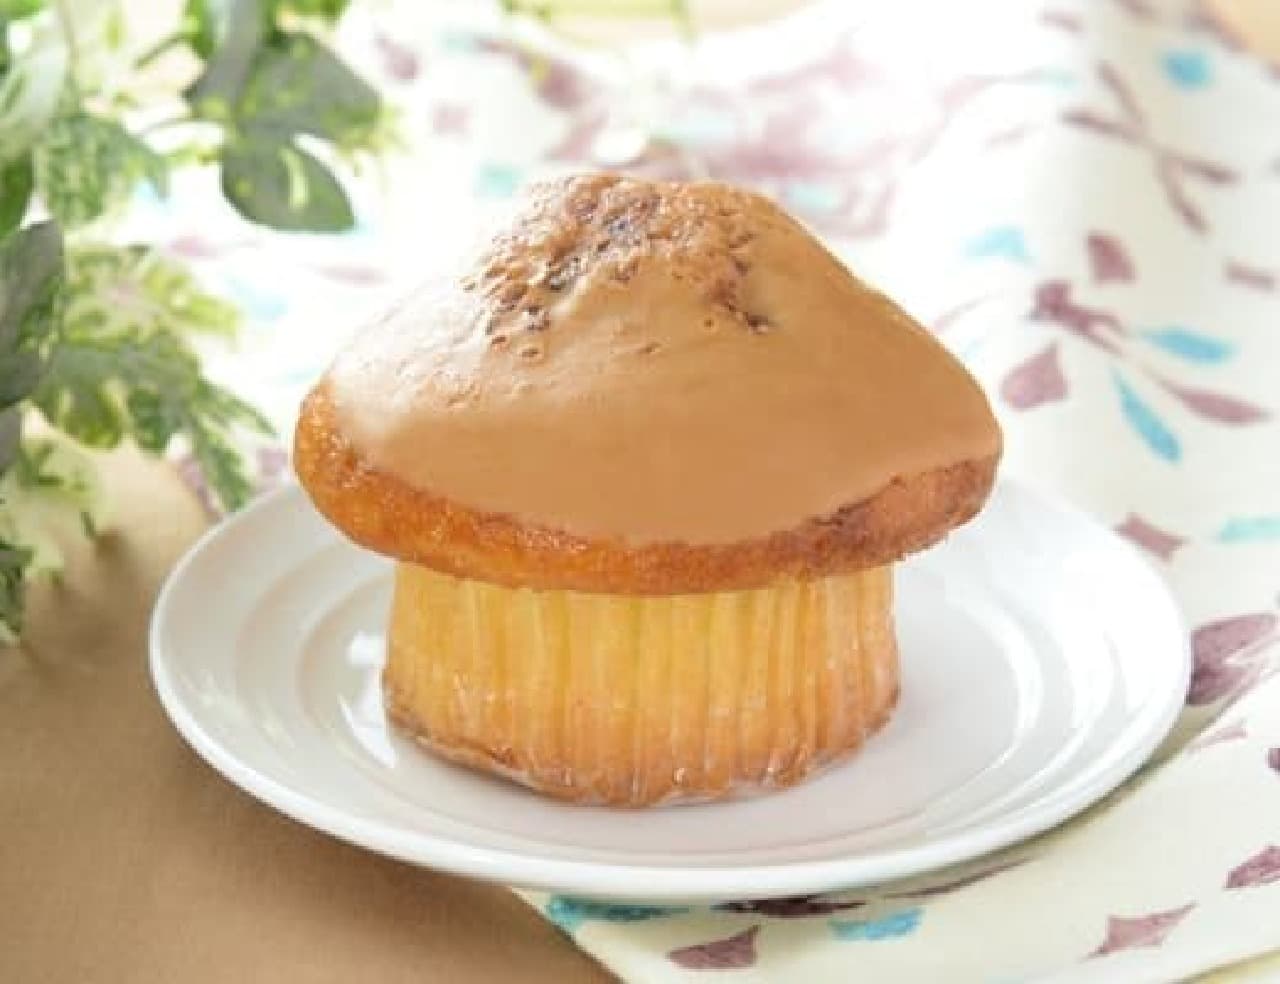 Lawson "Caramel Muffin"